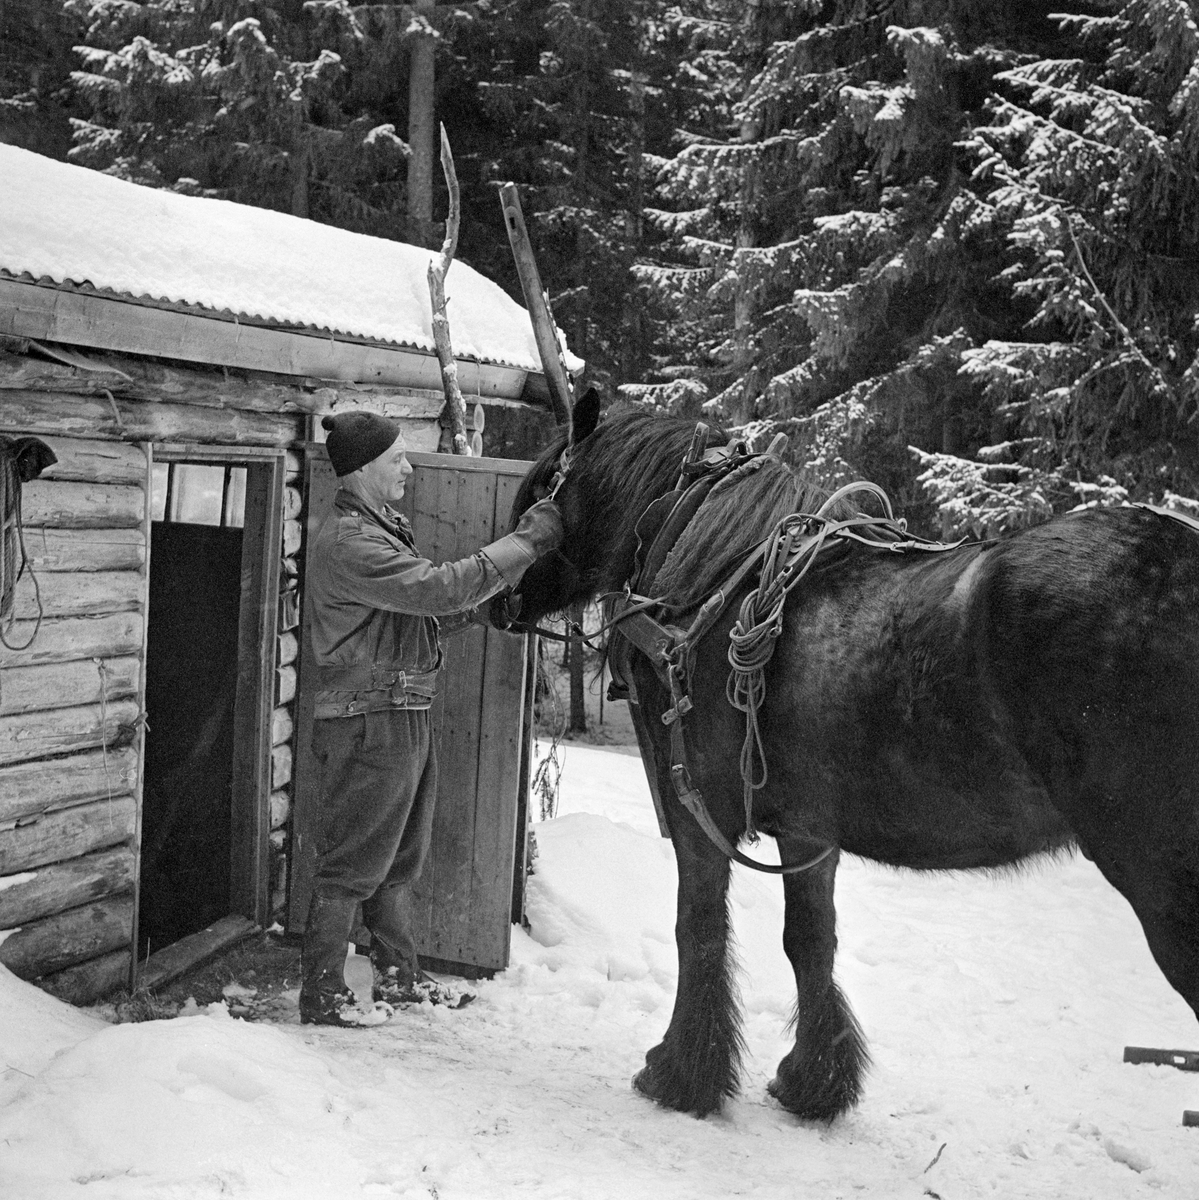 Tømmerkjører Johan Rasch (1916-2009), fotografert med dølahesten sin foran døra til stallen ved  Smaltjernskoia i Svartholtet i Elverum.  Rasch holdt hesten i hodelaget.  Den var utstyrt med arbeidssele og skulle øyensynlig inn i den lave, laftete stallen med bølgeblikket pulttak. Tømmerkjøreren var kledd i arbeidsjakke av dongeristoff og vadmelsbukse, han hadde ei lett topplue på hodet, arbeidshansker på hendene og langskaftete gummistøvler på beina.  I bakgrunnen skimter vi noe av et drag, som var reist mot stallbygningen.

Johan Rasch (1916-2009) drev småbruket Grønstad i Elverum.  Vinterstid arbeidet han i skogen, i hovedsak som tømmerkjører med hest, og om våren og på forsommern fløtet han tømmer i Glomma.